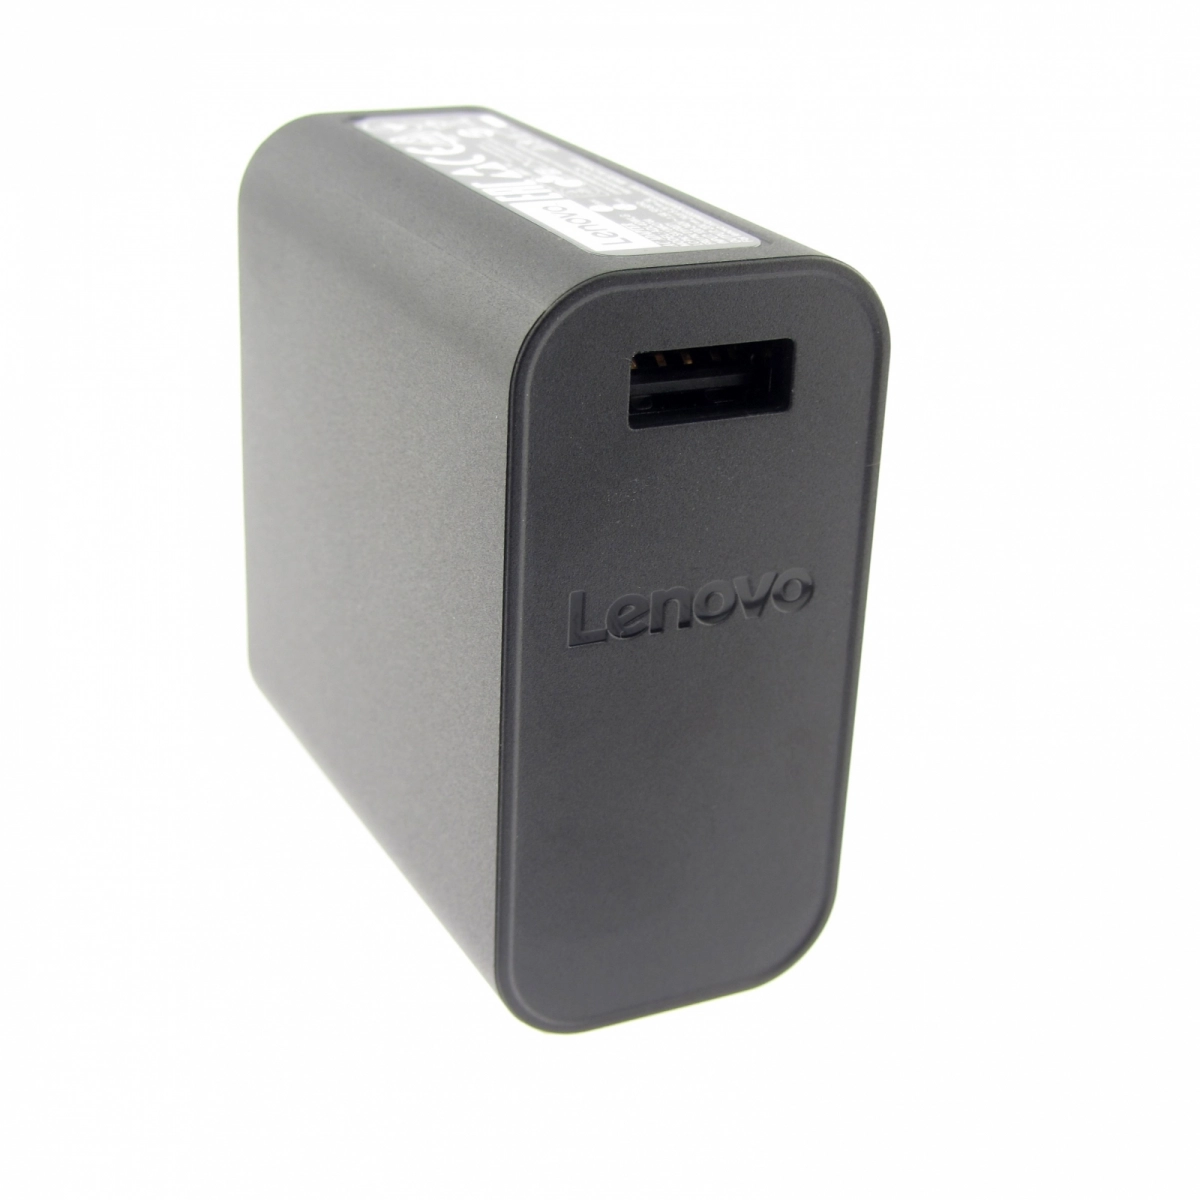 Original Netzteil für LENOVO 01FR071, 20V, 2A, Stecker USB, ohne USB-Kabel